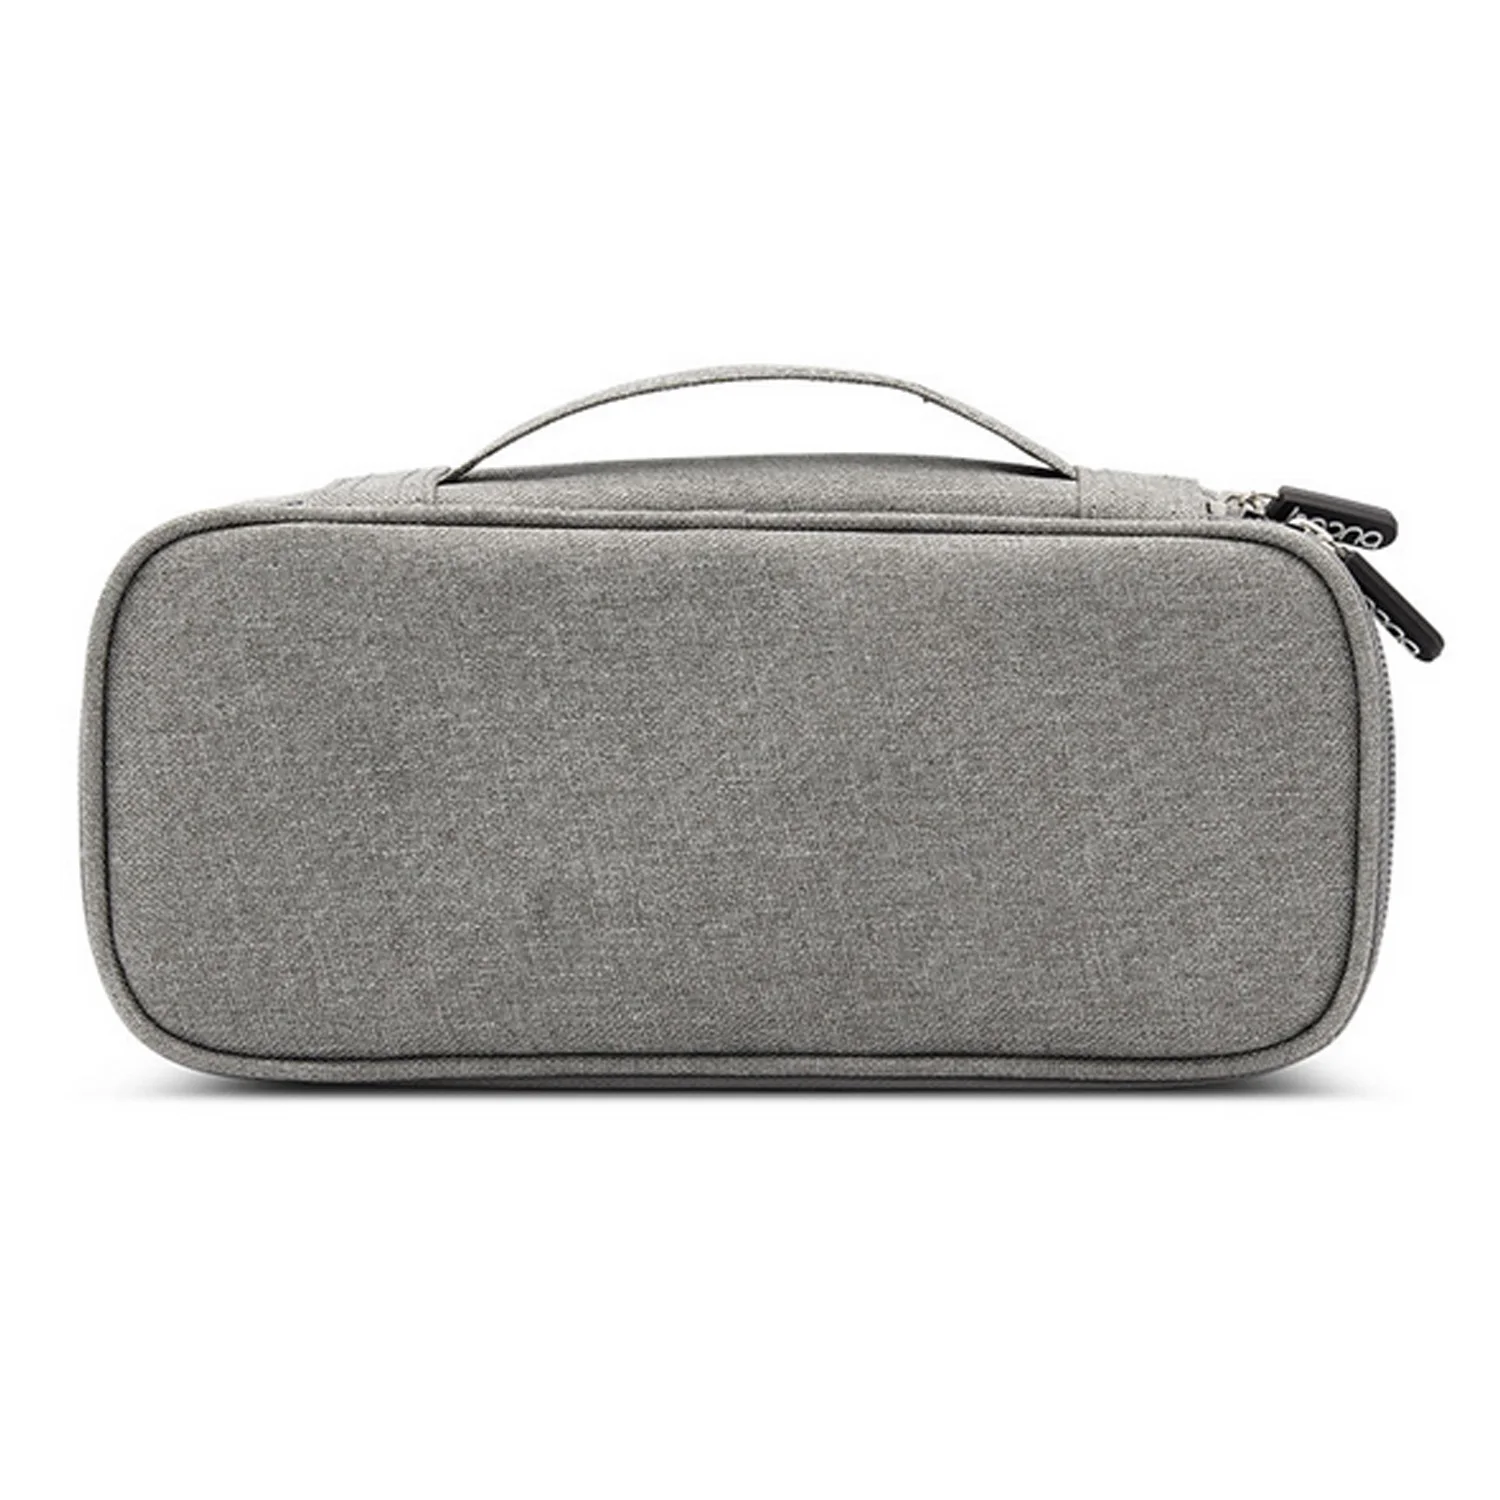 Vococal сумка для цифрового кабеля портативные гаджеты для путешествий сумка шнур питания зарядное устройство Органайзер гарнитуры привод электронные аксессуары для чемоданов - Цвет: Gray